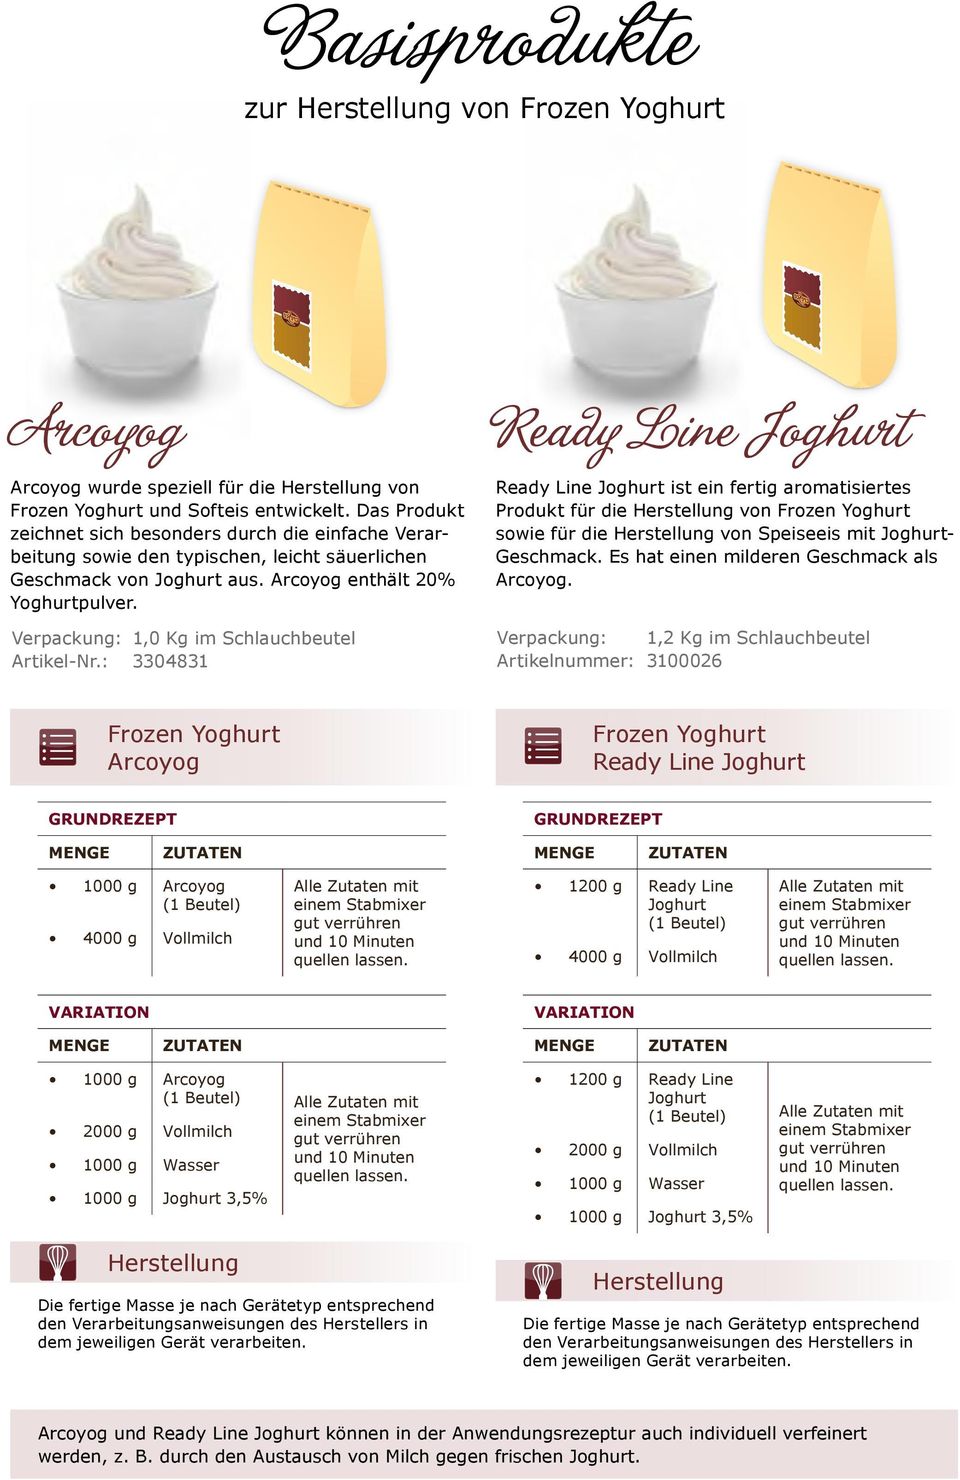 Ready Line Joghurt ist ein fertig aromatisiertes Produkt für die Herstellung von Frozen Yoghurt sowie für die Herstellung von Speiseeis mit JoghurtGeschmack.